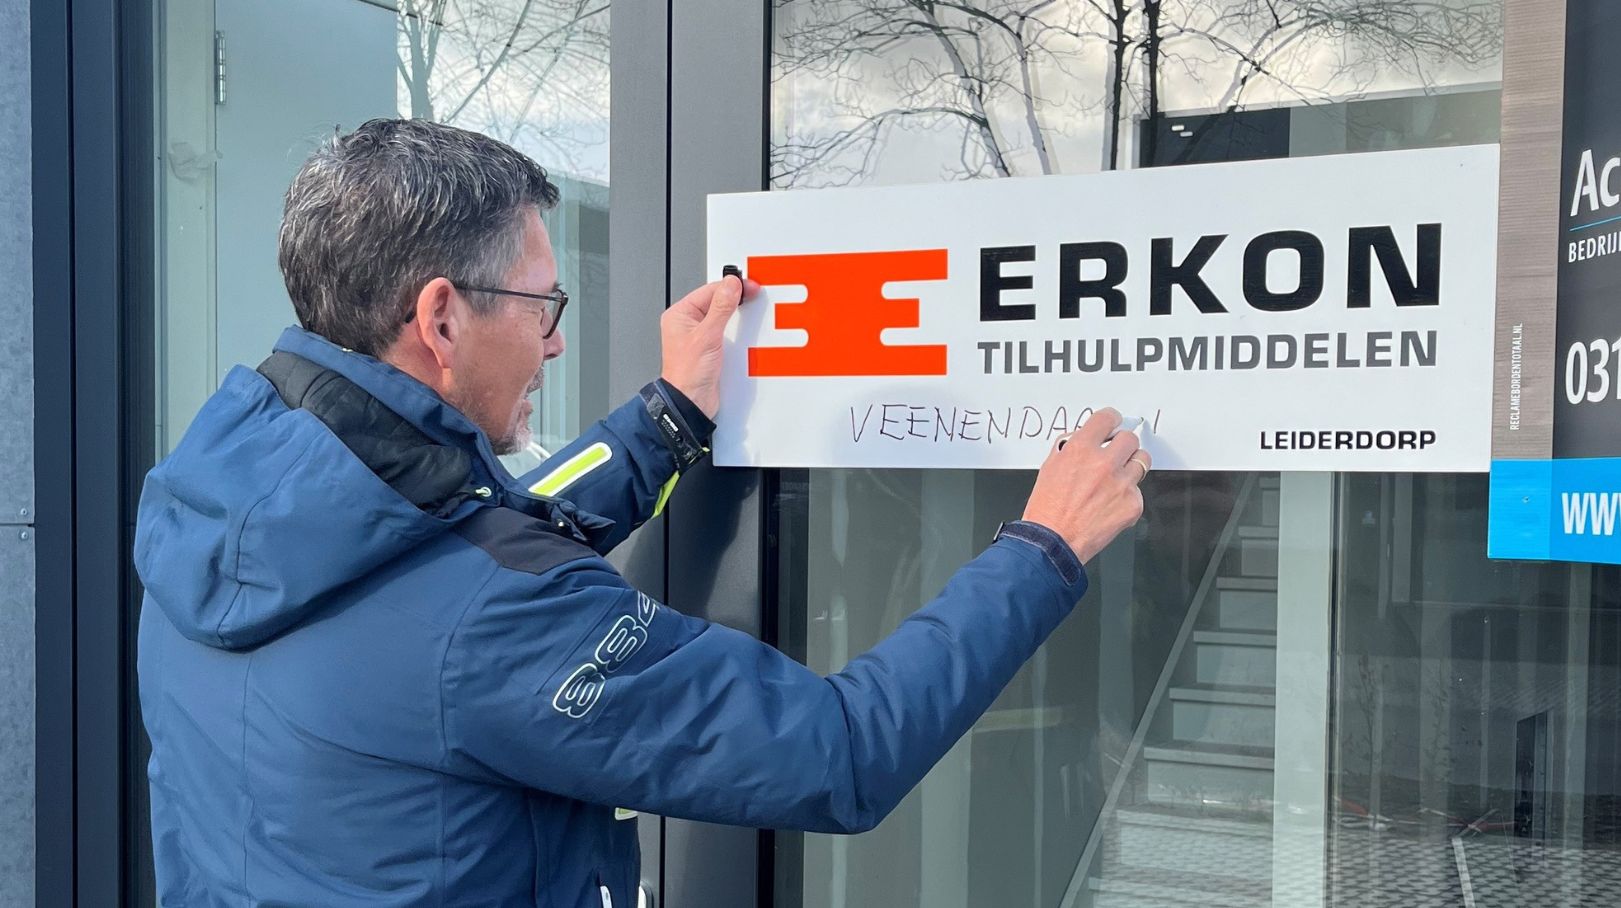 Tilhulpspecialist Erkon breidt uit met een nieuw pand in Veenendaal 